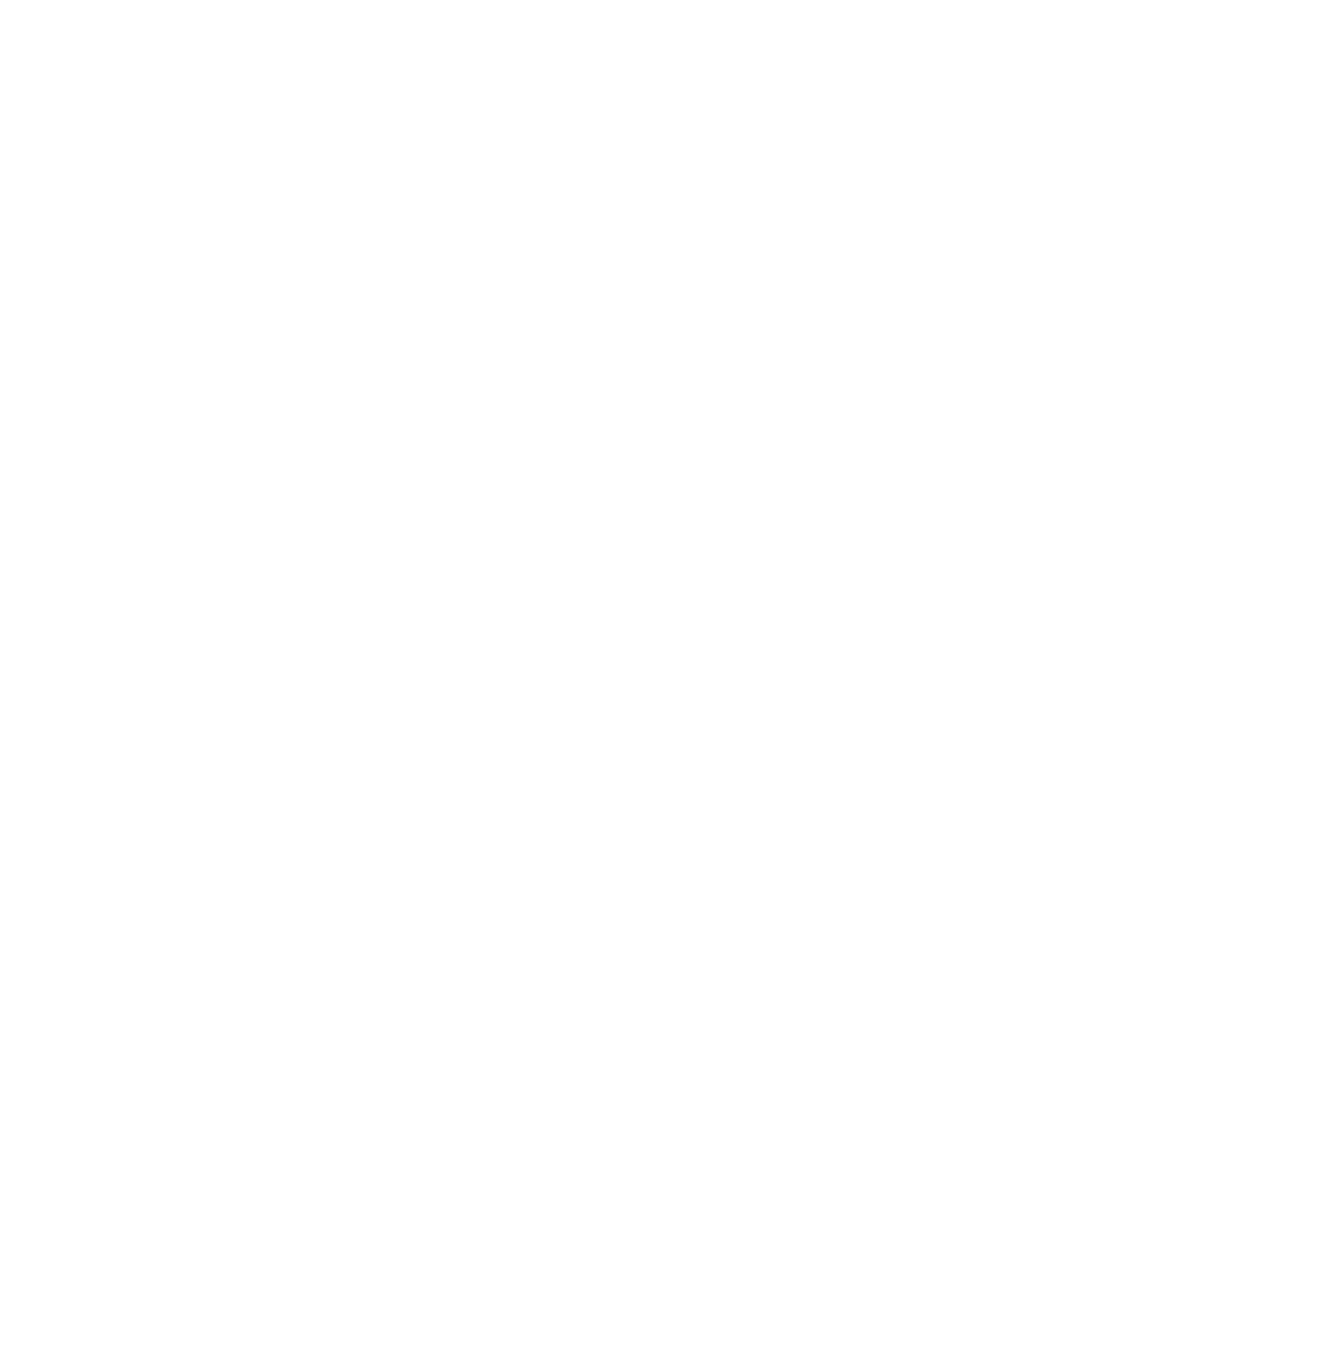 JEFFREYCWILLIAMS